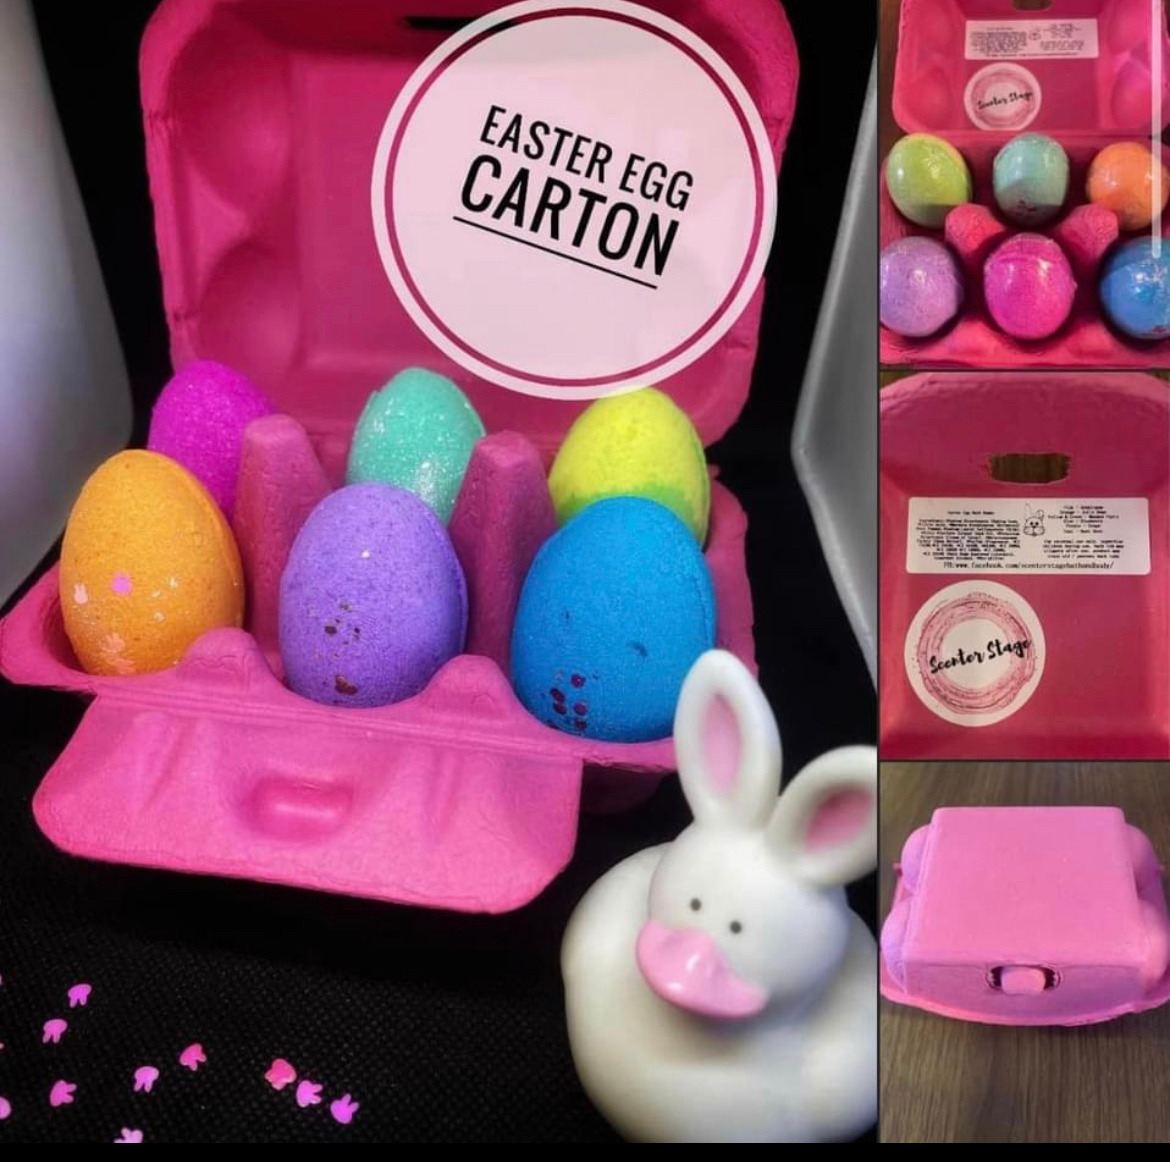 Easter Egg Carton - ORANGE Carton